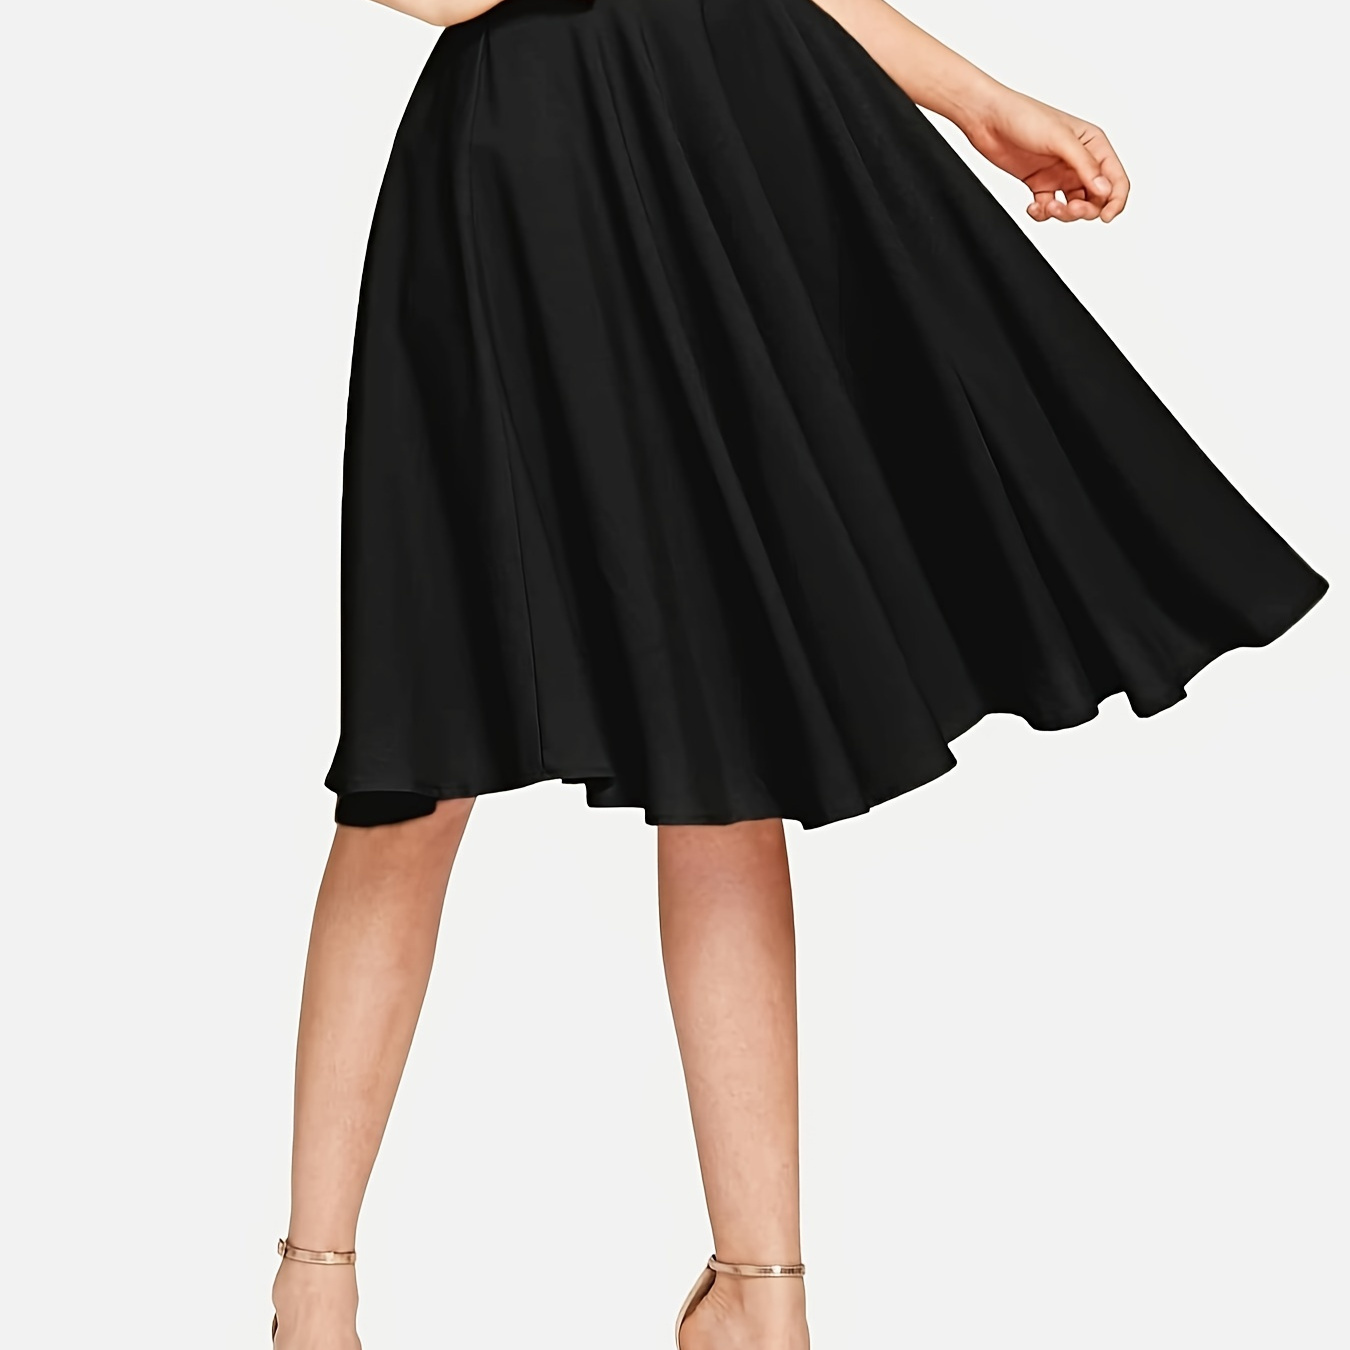 

Solid Color High Waist Flared Skirt, Elegant Knee Length Skirt For Spring & Summer, Women's Clothing